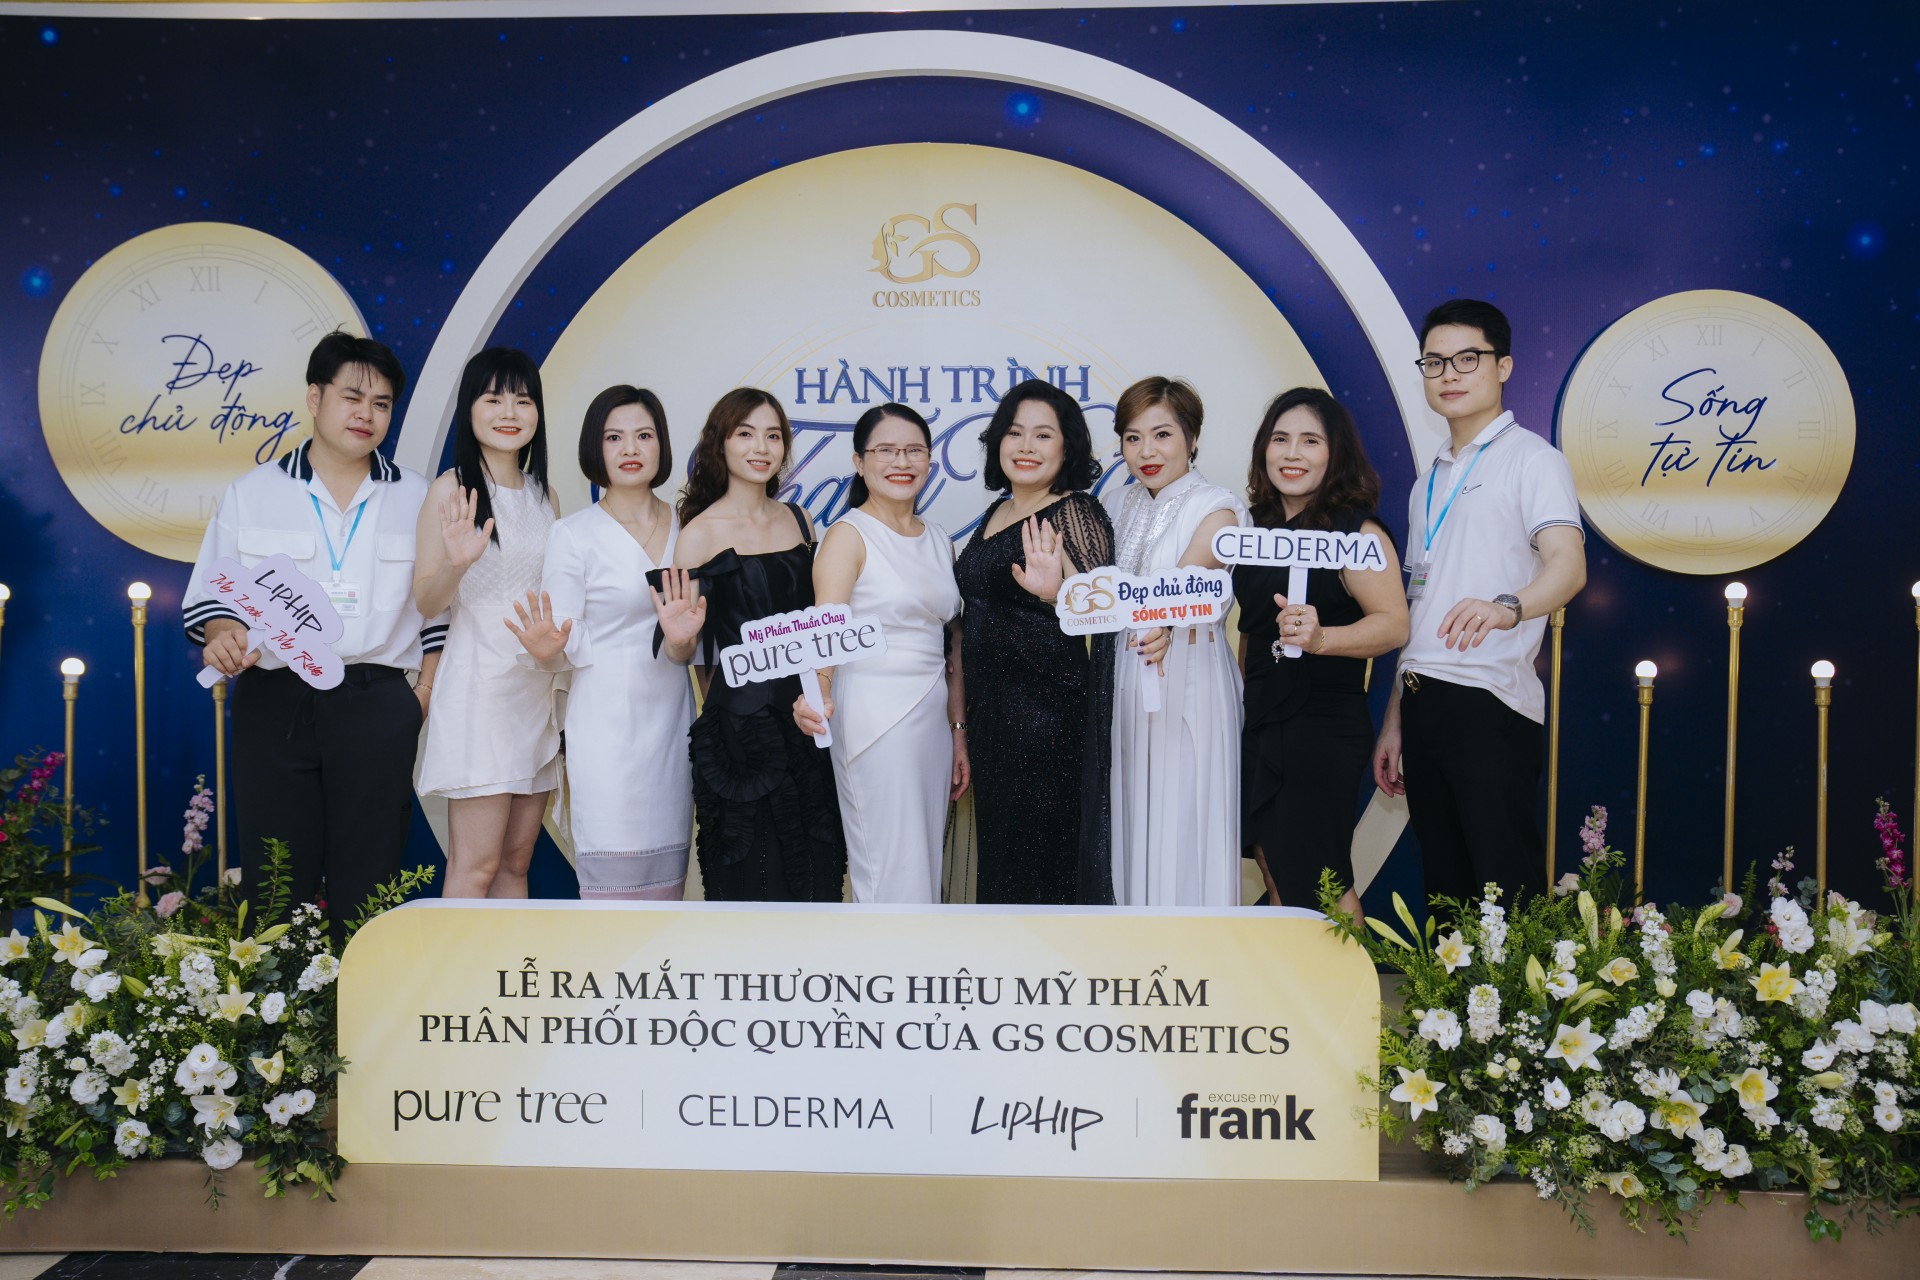 Hành trình thanh xuân – Đẹp chủ động, sống tự tin! GS Cosmetics Tự Hào Ra Mắt Dòng Mỹ Phẩm Thuần Chay Tại Việt Nam: Sự Kiện Làm Đẹp Đẳng Cấp